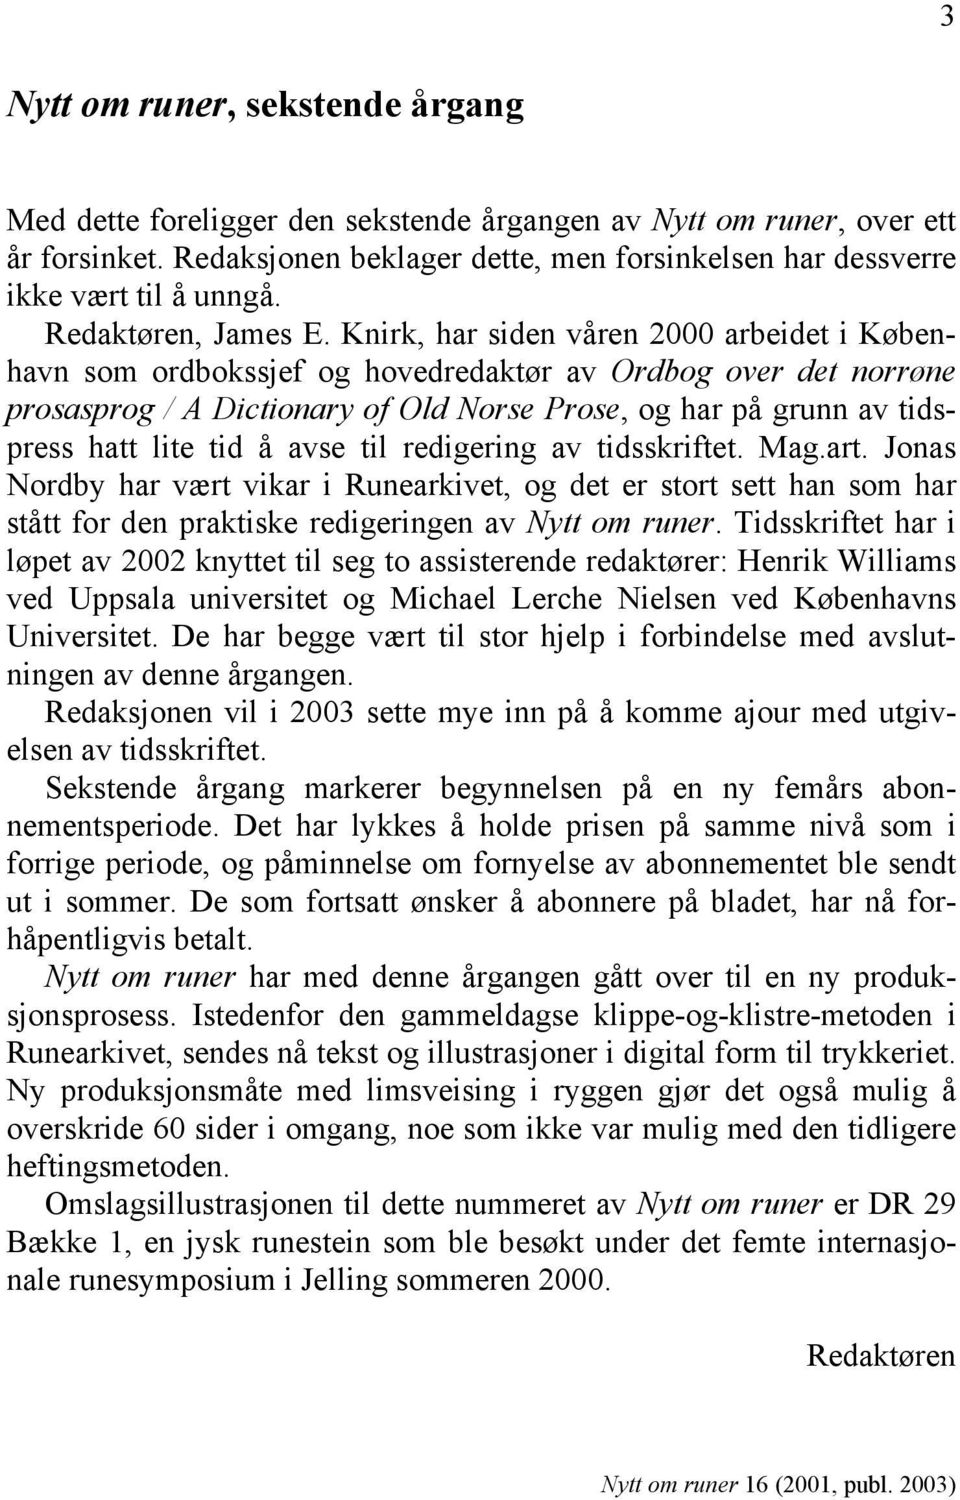 Knirk, har siden våren 2000 arbeidet i København som ordbokssjef og hovedredaktør av Ordbog over det norrøne prosasprog / A Dictionary of Old Norse Prose, og har på grunn av tidspress hatt lite tid å